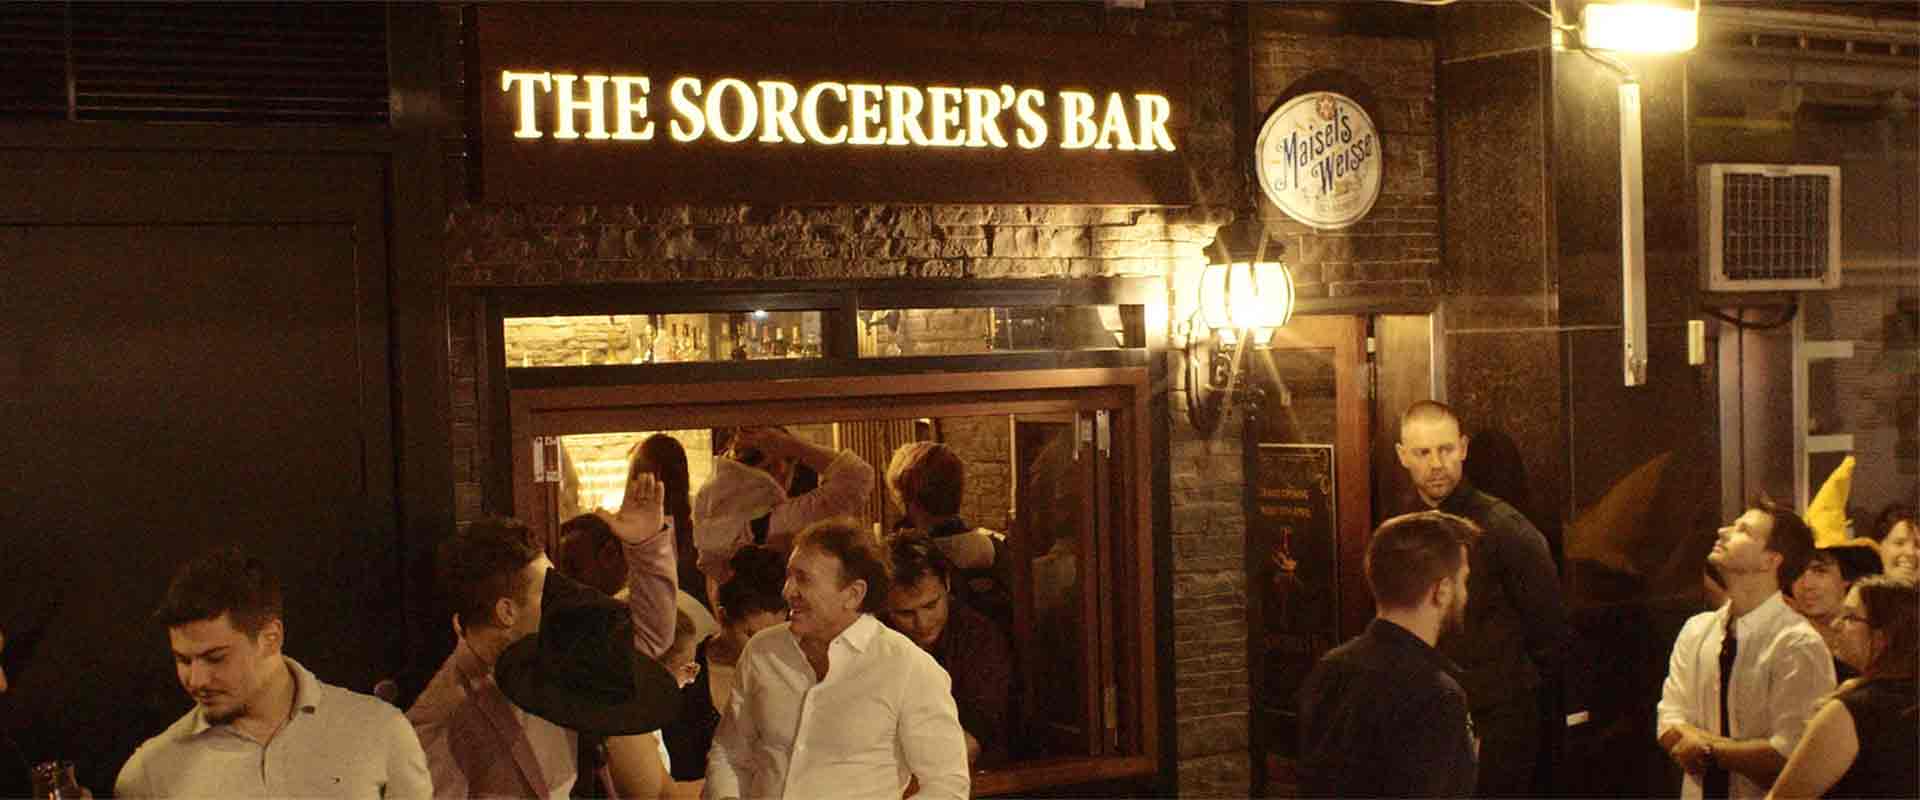 The Sorcerer's Bar, Bank St